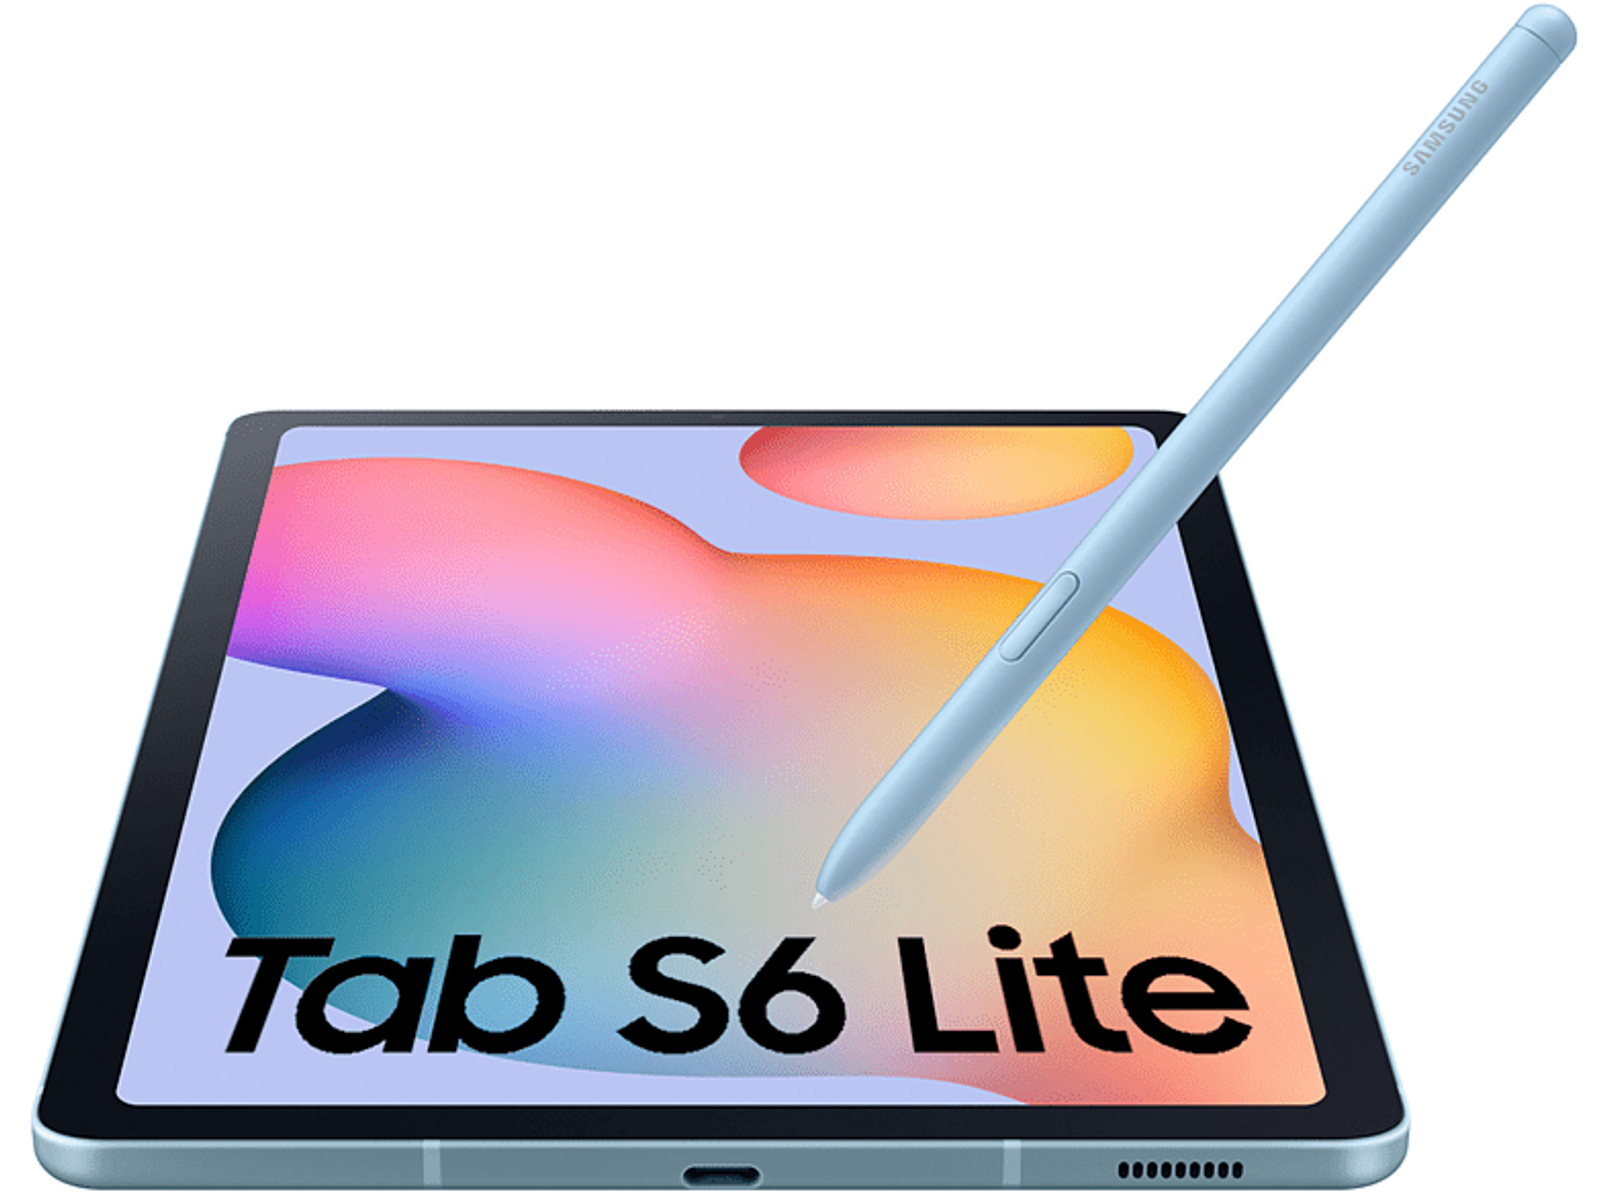 SAMSUNG Galaxy Tab 128 S6 GB, Lite Zoll, 2022, Tablet, Blau 10,4